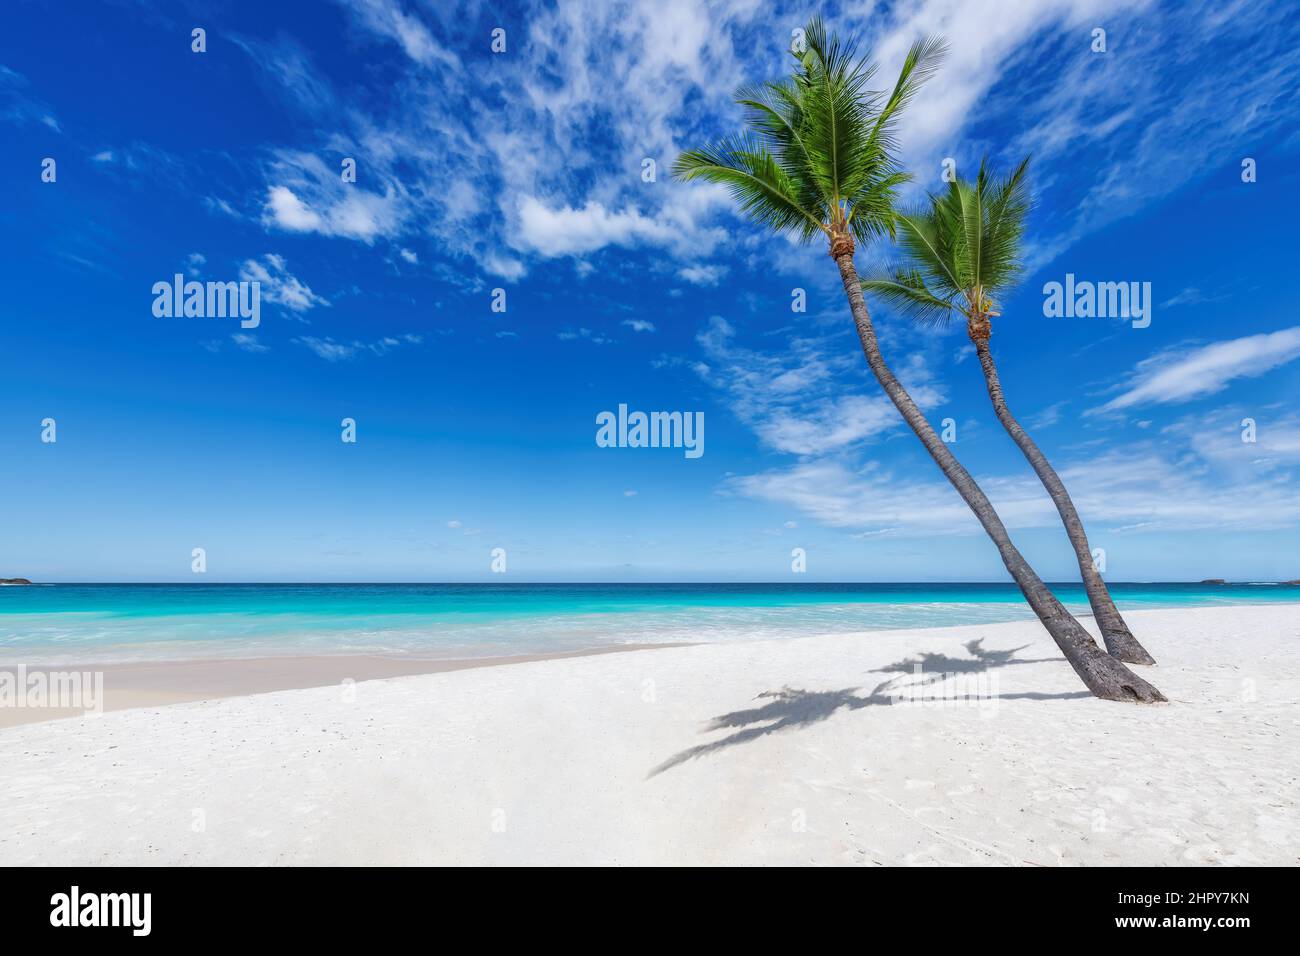 Spiaggia di sabbia bianca tropicale e mare turchese sull'isola caraibica. Foto Stock